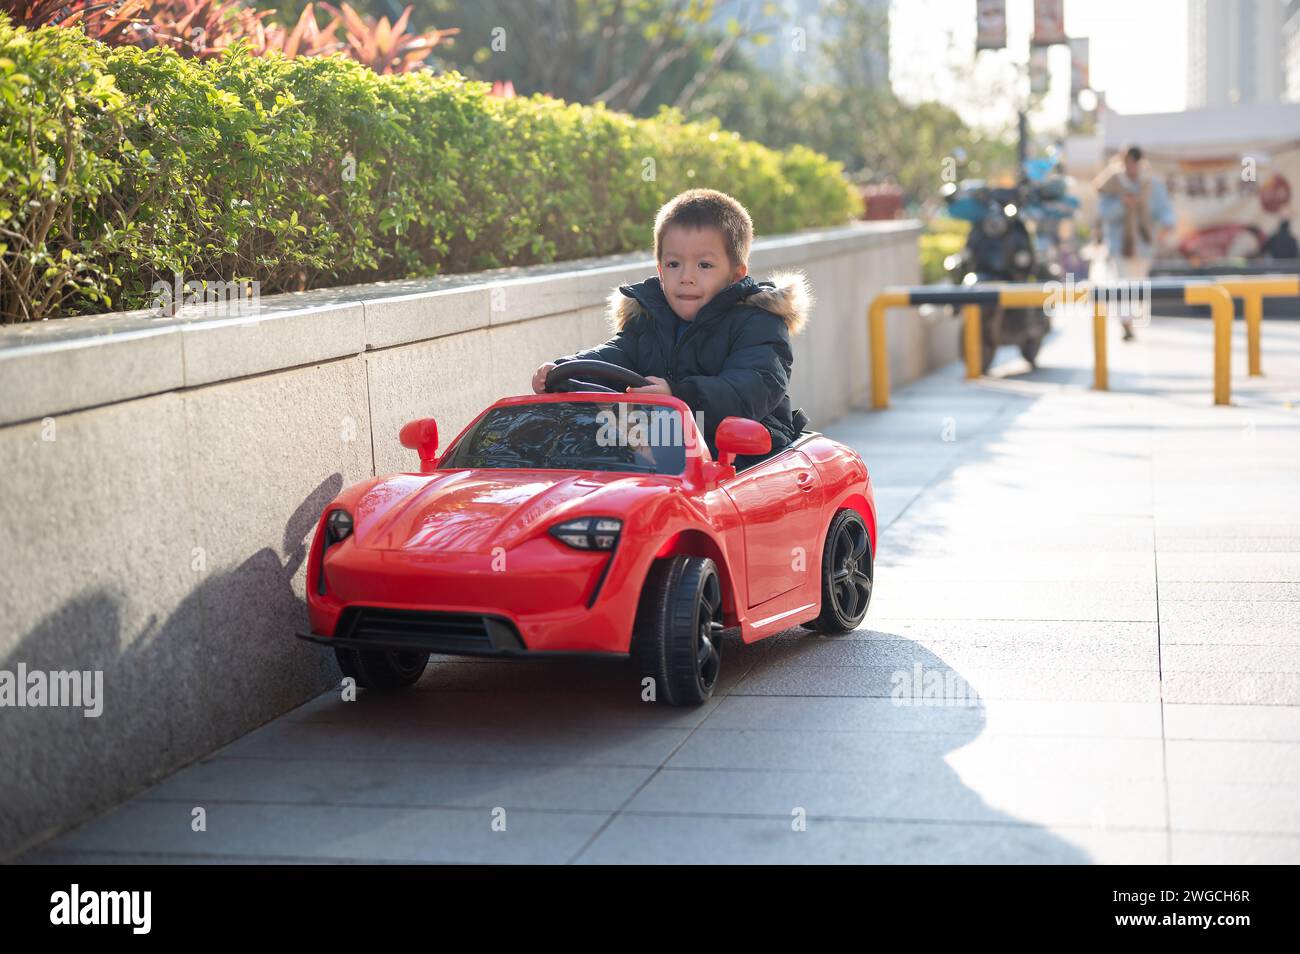 Un jeune enfant multiracial navigue joyeusement la route du quartier dans une voiture de sport rouge jouet, enfilant un grand sourire alors qu'ils prennent le contrôle de leur jouet ca Banque D'Images